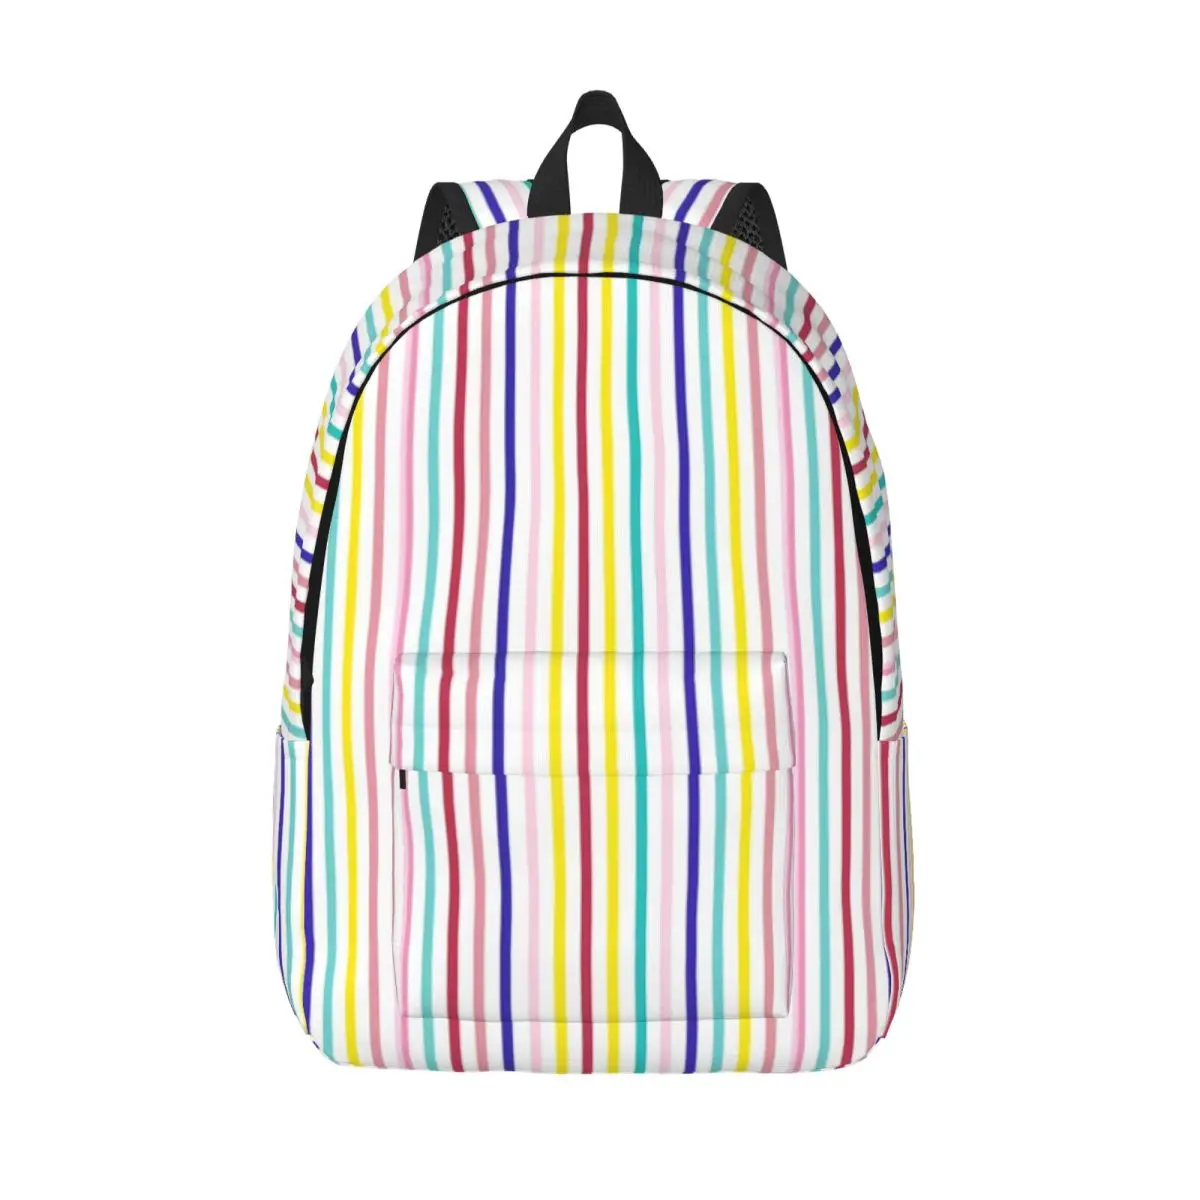 

Яркий Радужный полосатый рюкзак с принтом линий, уличные стильные рюкзаки для женщин, крутые школьные сумки, дизайнерский рюкзак с узором